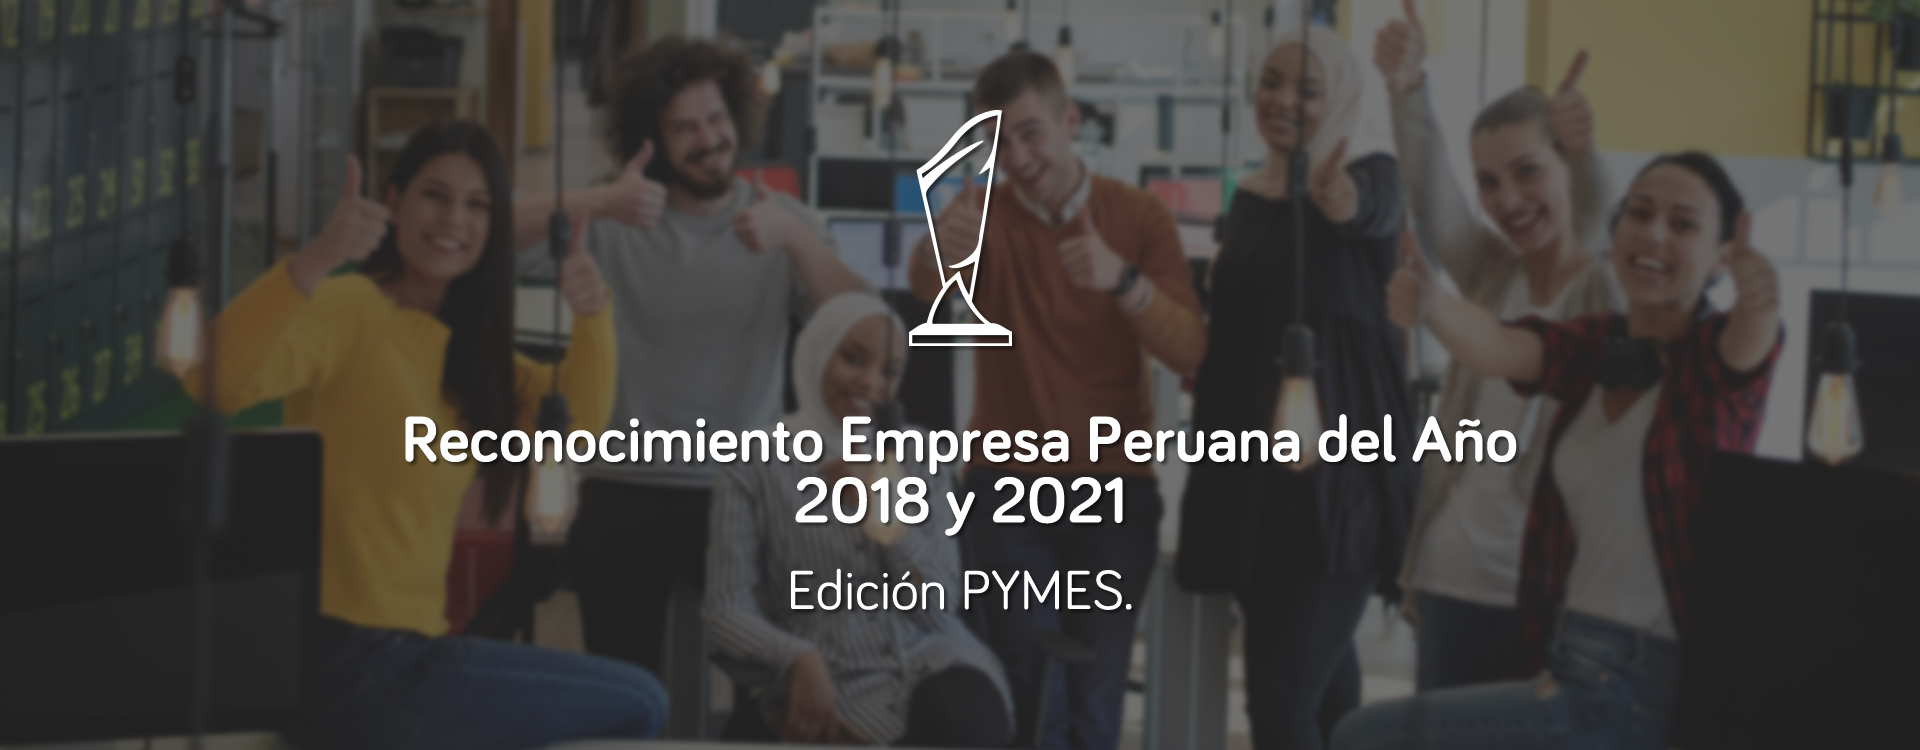 FEB - EMPRESA PERUANA DEL AÑO 2018 - 2021